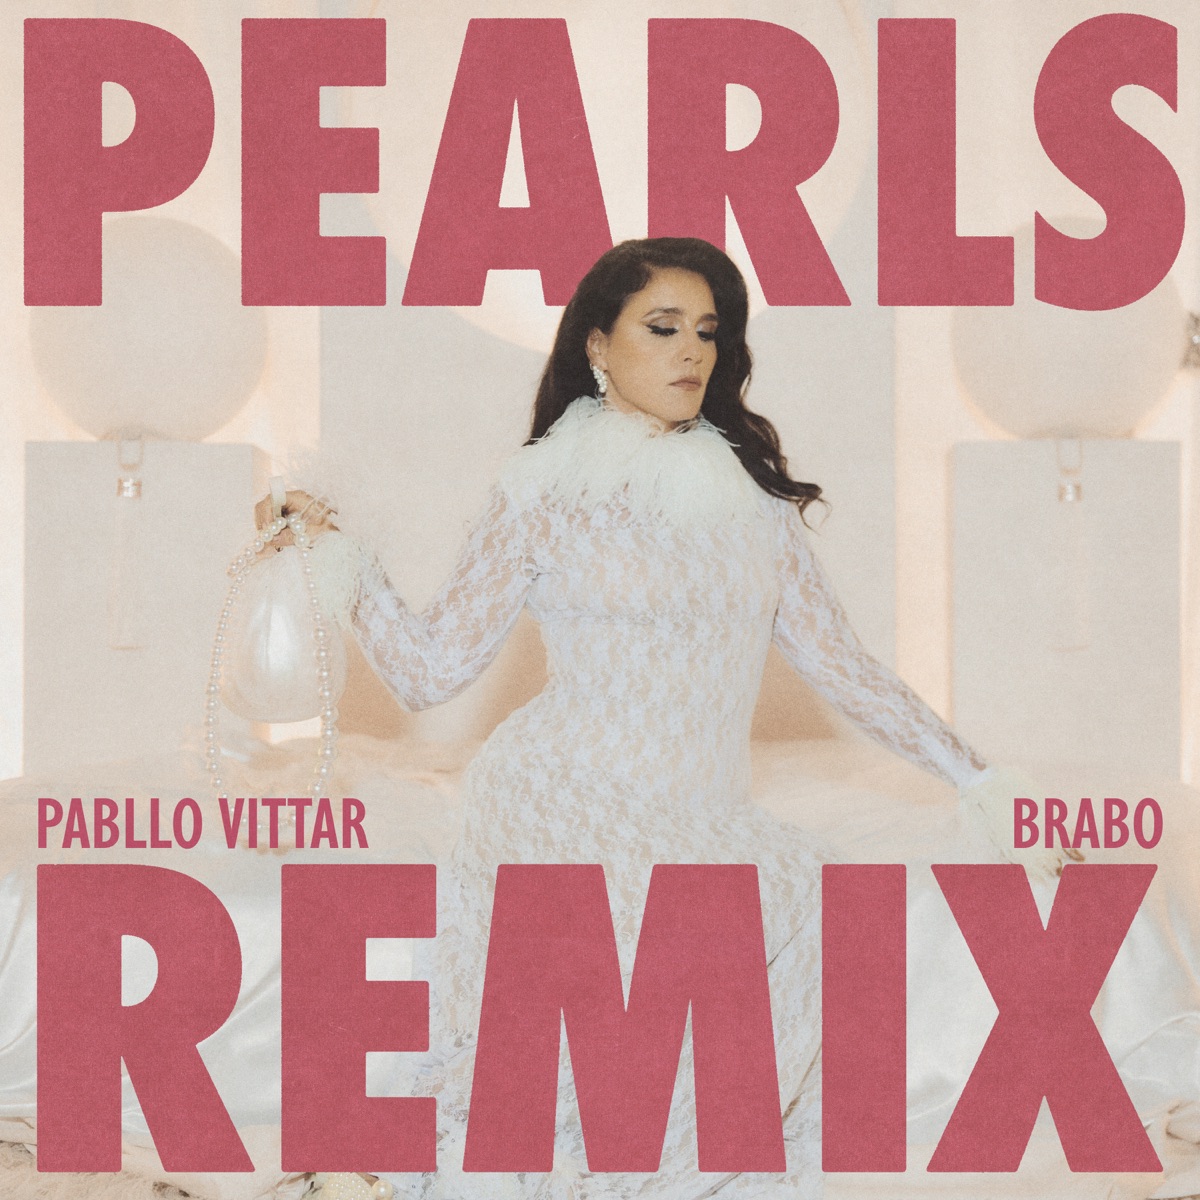 Sade - Pearls (TRADUÇÃO) - Ouvir Música